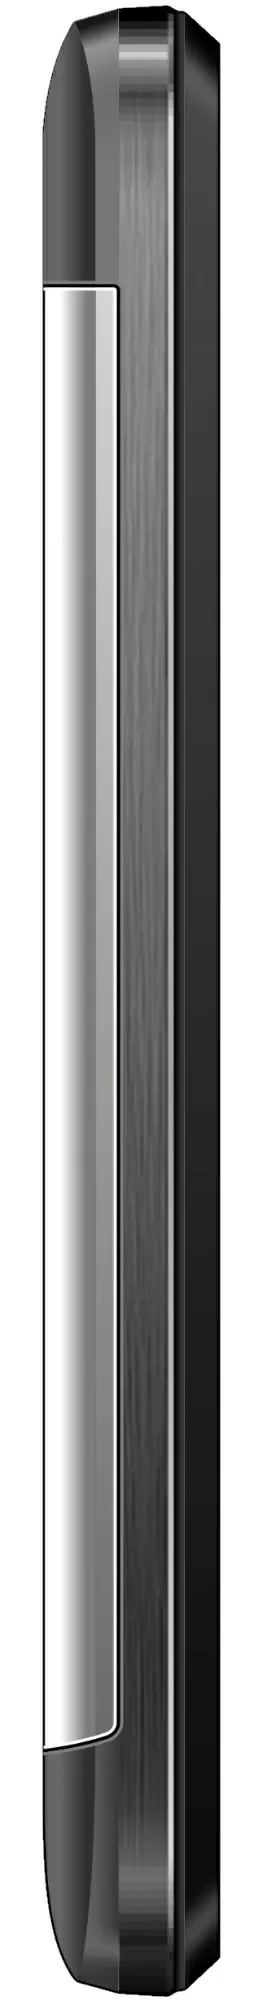 Мобильный телефон Maxcom MM144, серый